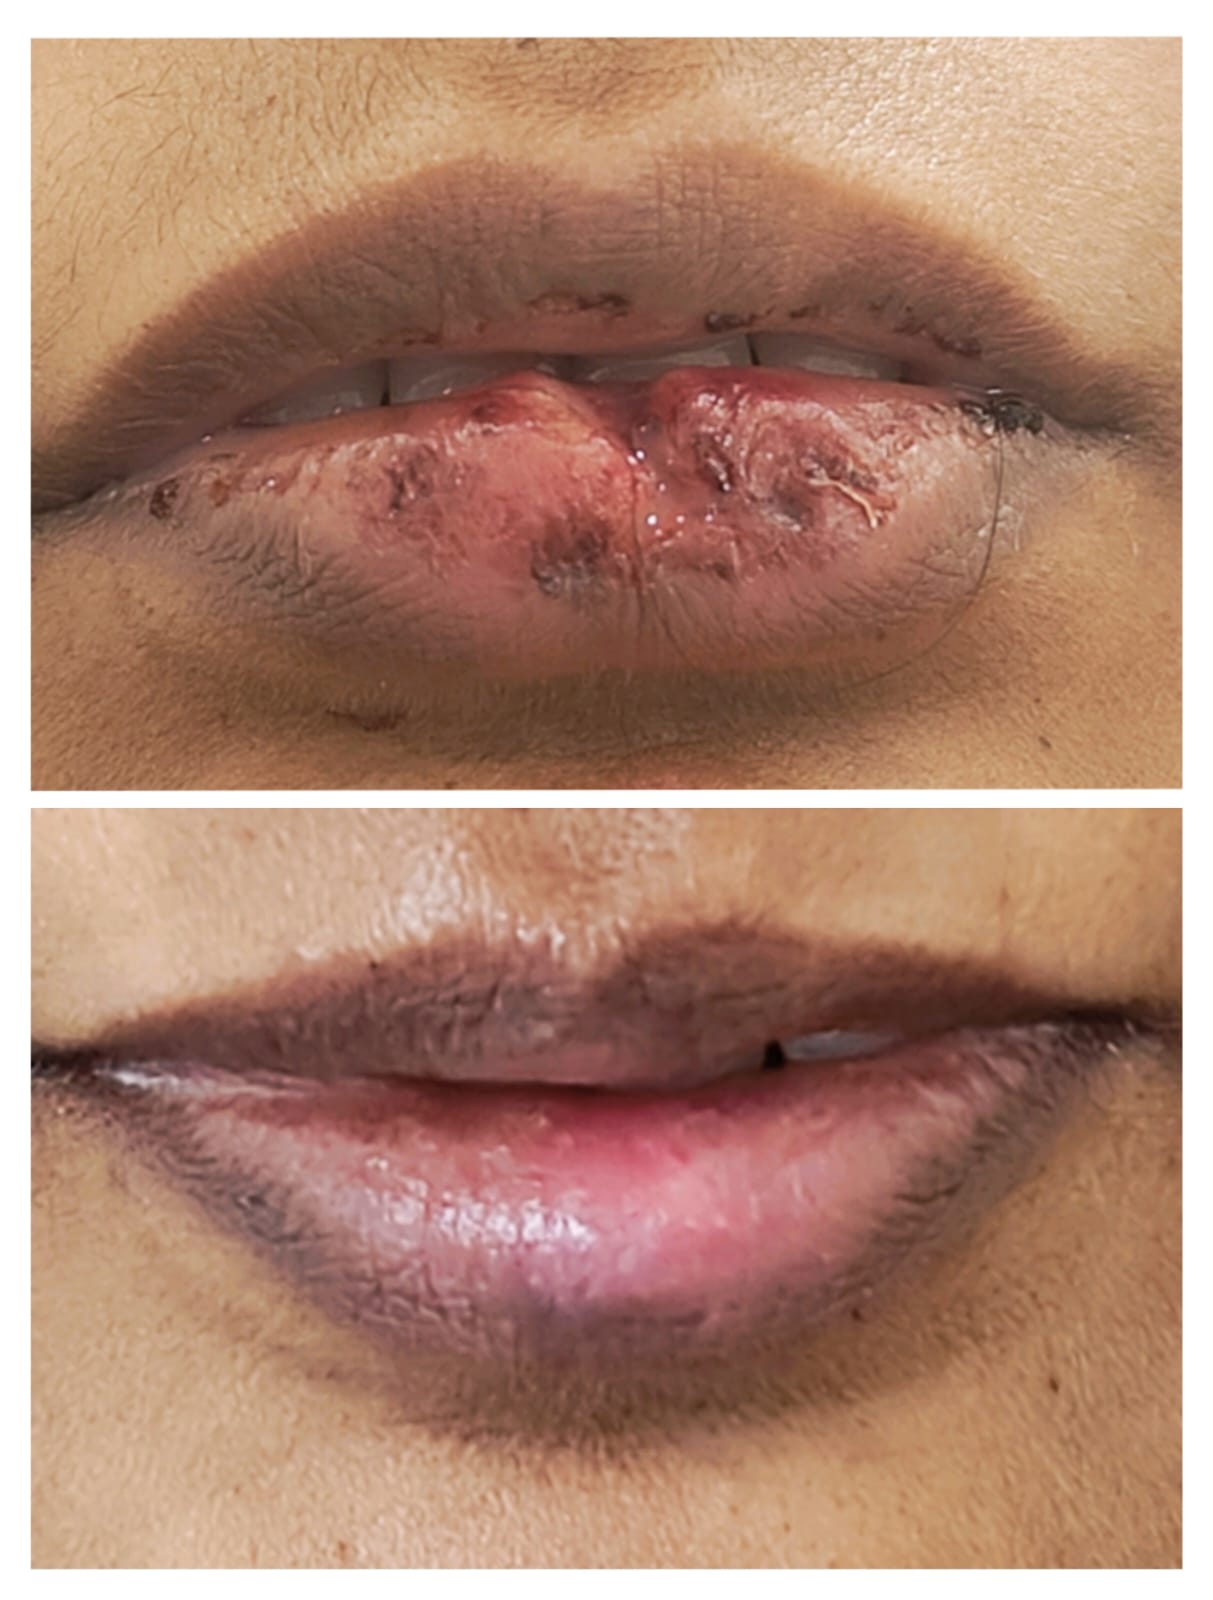 Lip injury repair